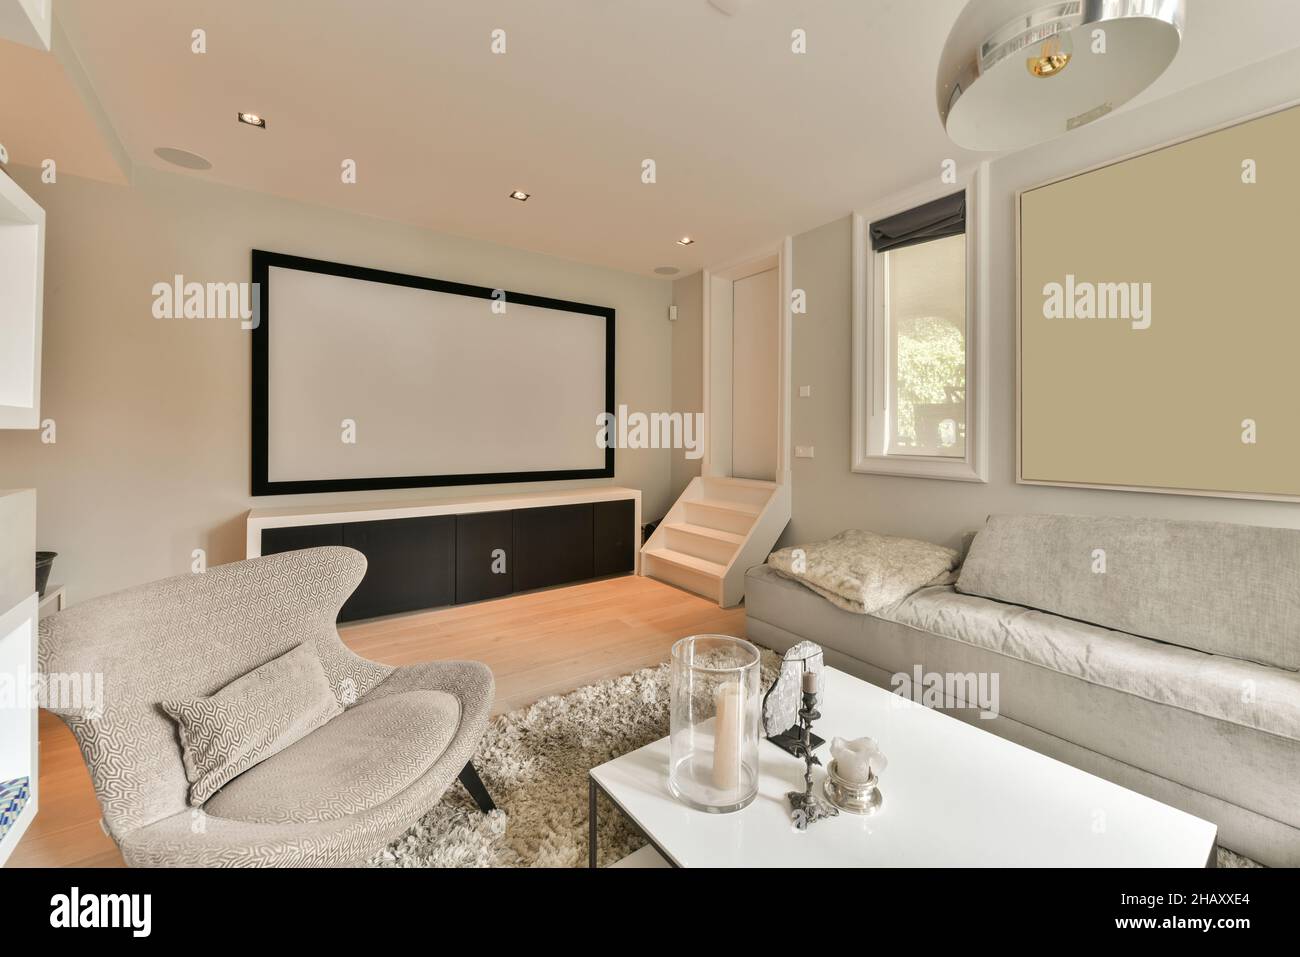 Intérieur d'un salon élégant avec canapé confortable et fauteuil table basse avec éléments décoratifs et écran de projection sur le mur Banque D'Images